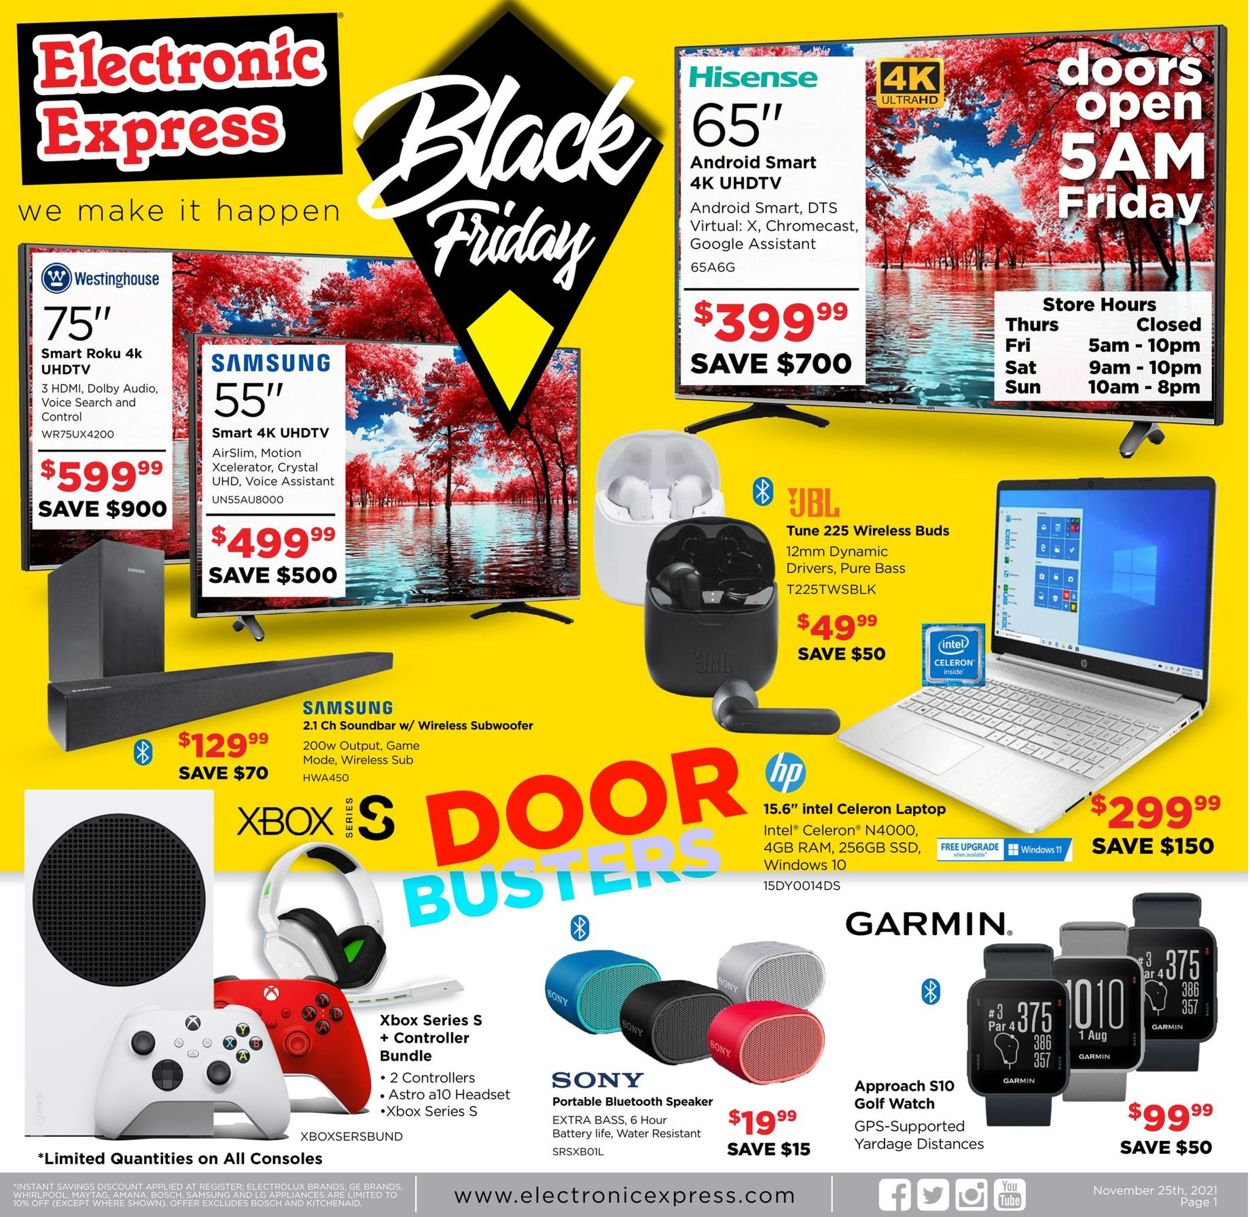 Electronic Express BLACK FRIDAY AD 2021 Weekly Ad Circular - valid 11/25-11/28/2021